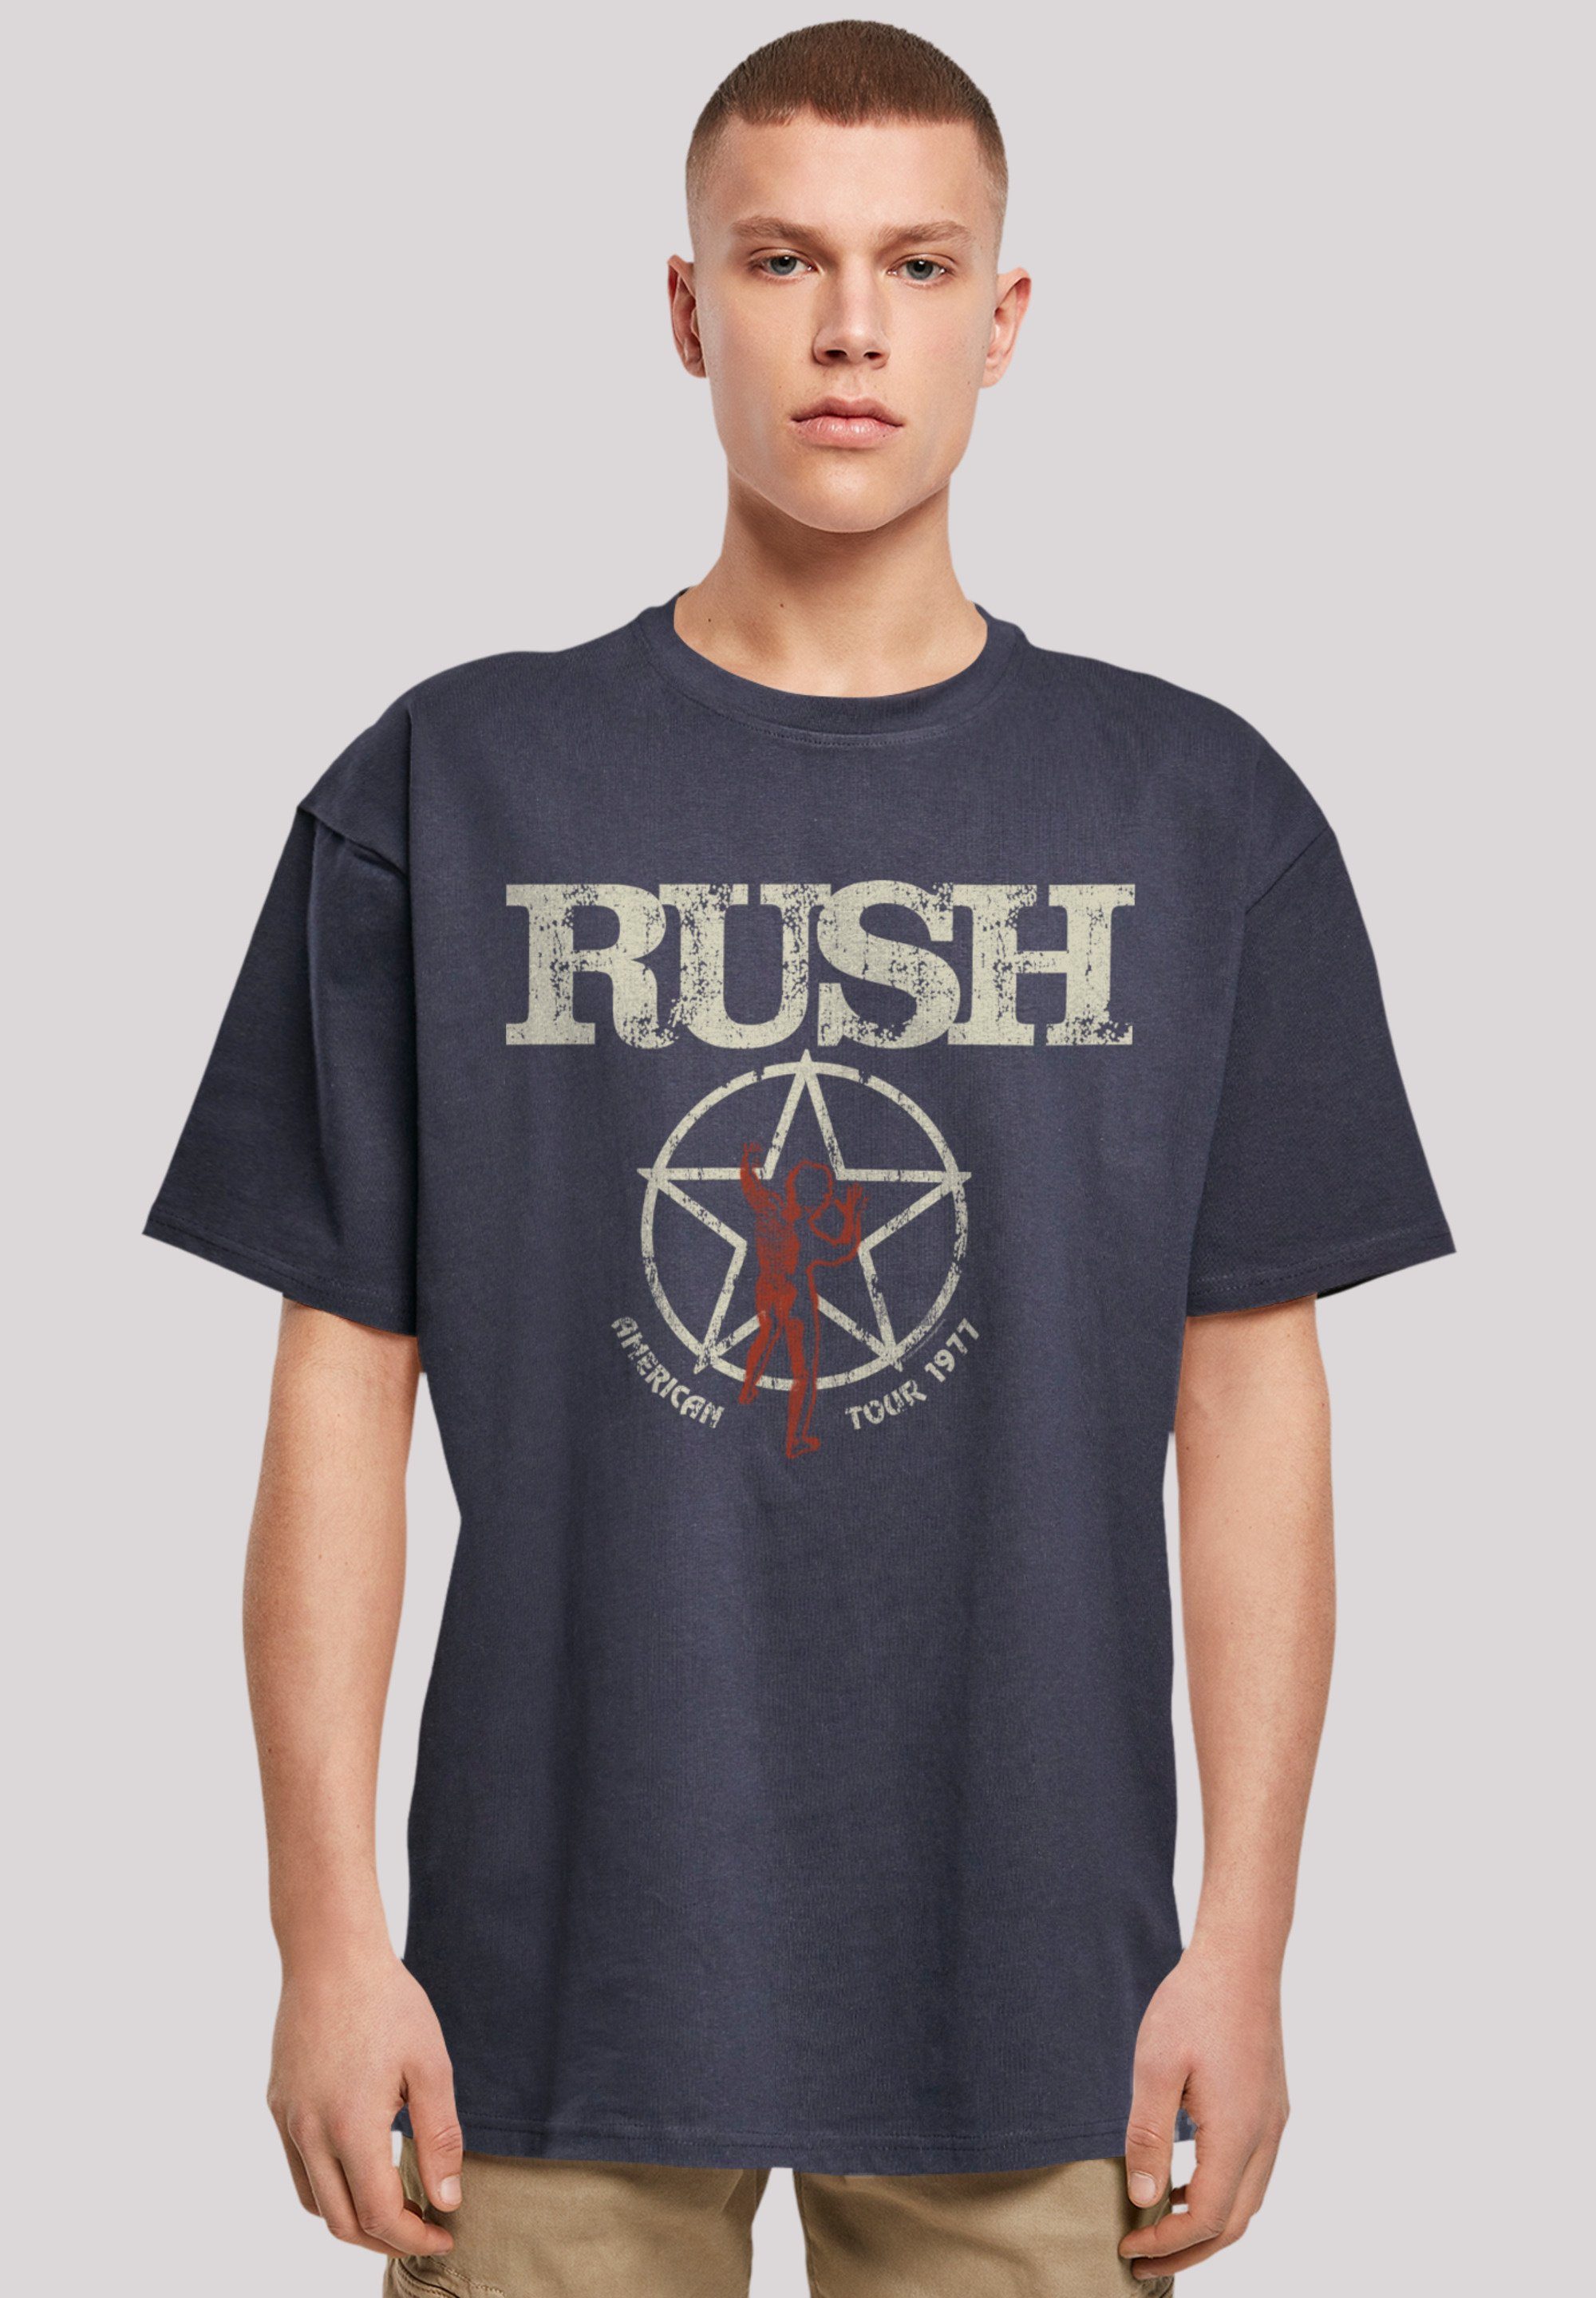 F4NT4STIC T-Shirt Rush Rock Band American Tour 1977 Premium Qualität navy